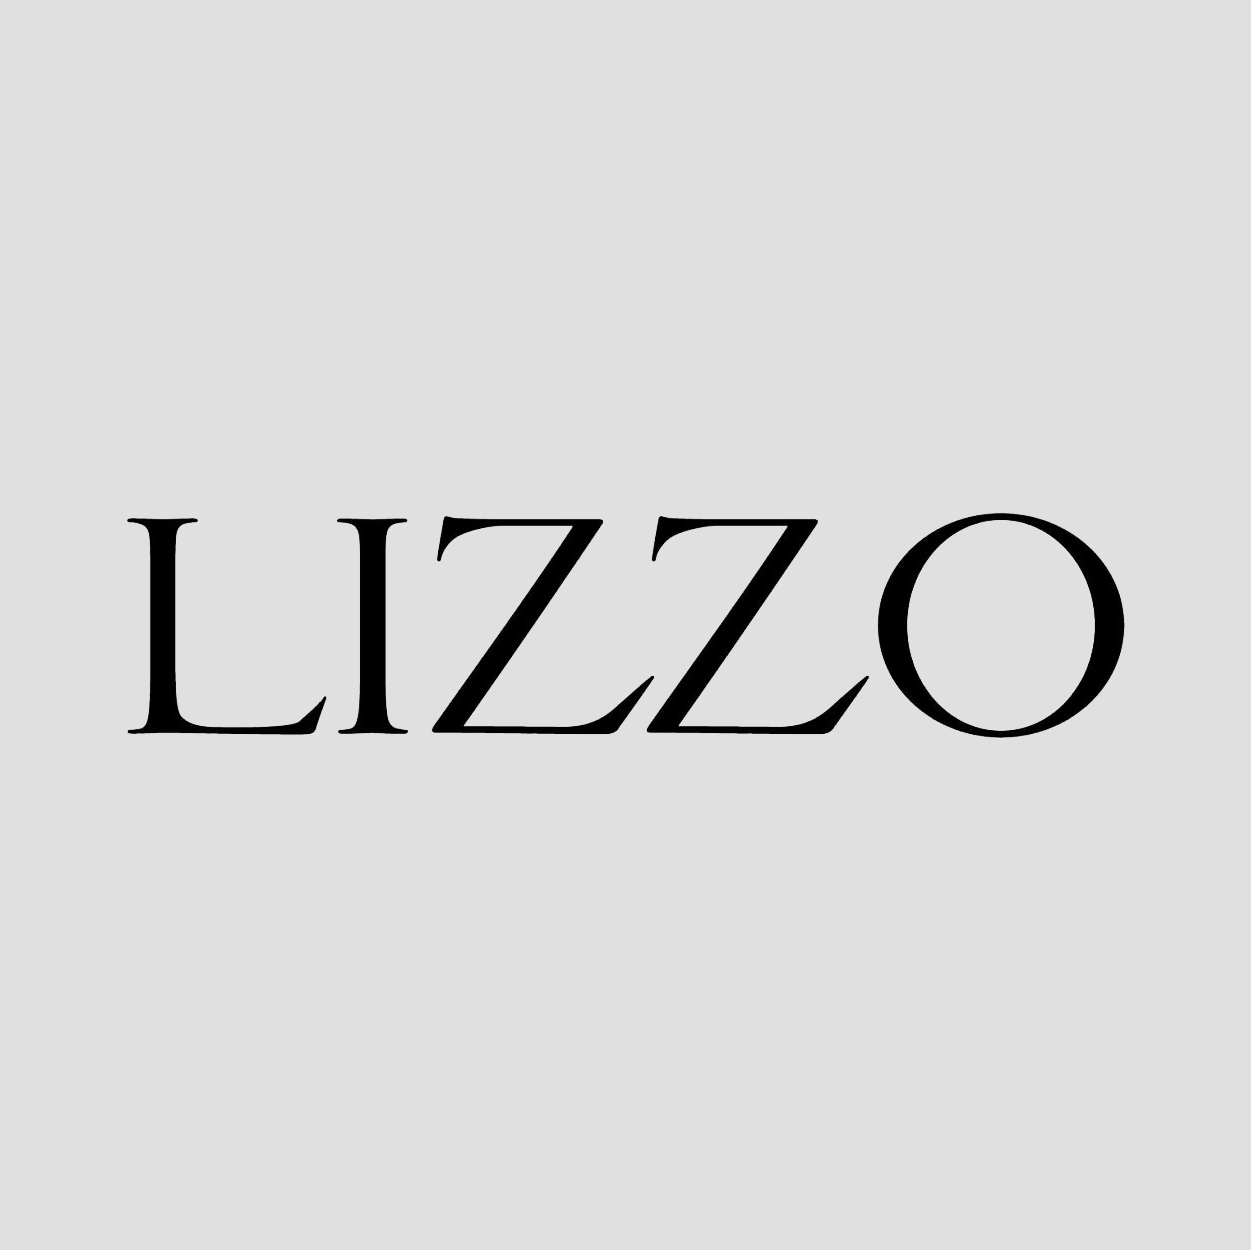 lizzo logo.jpg